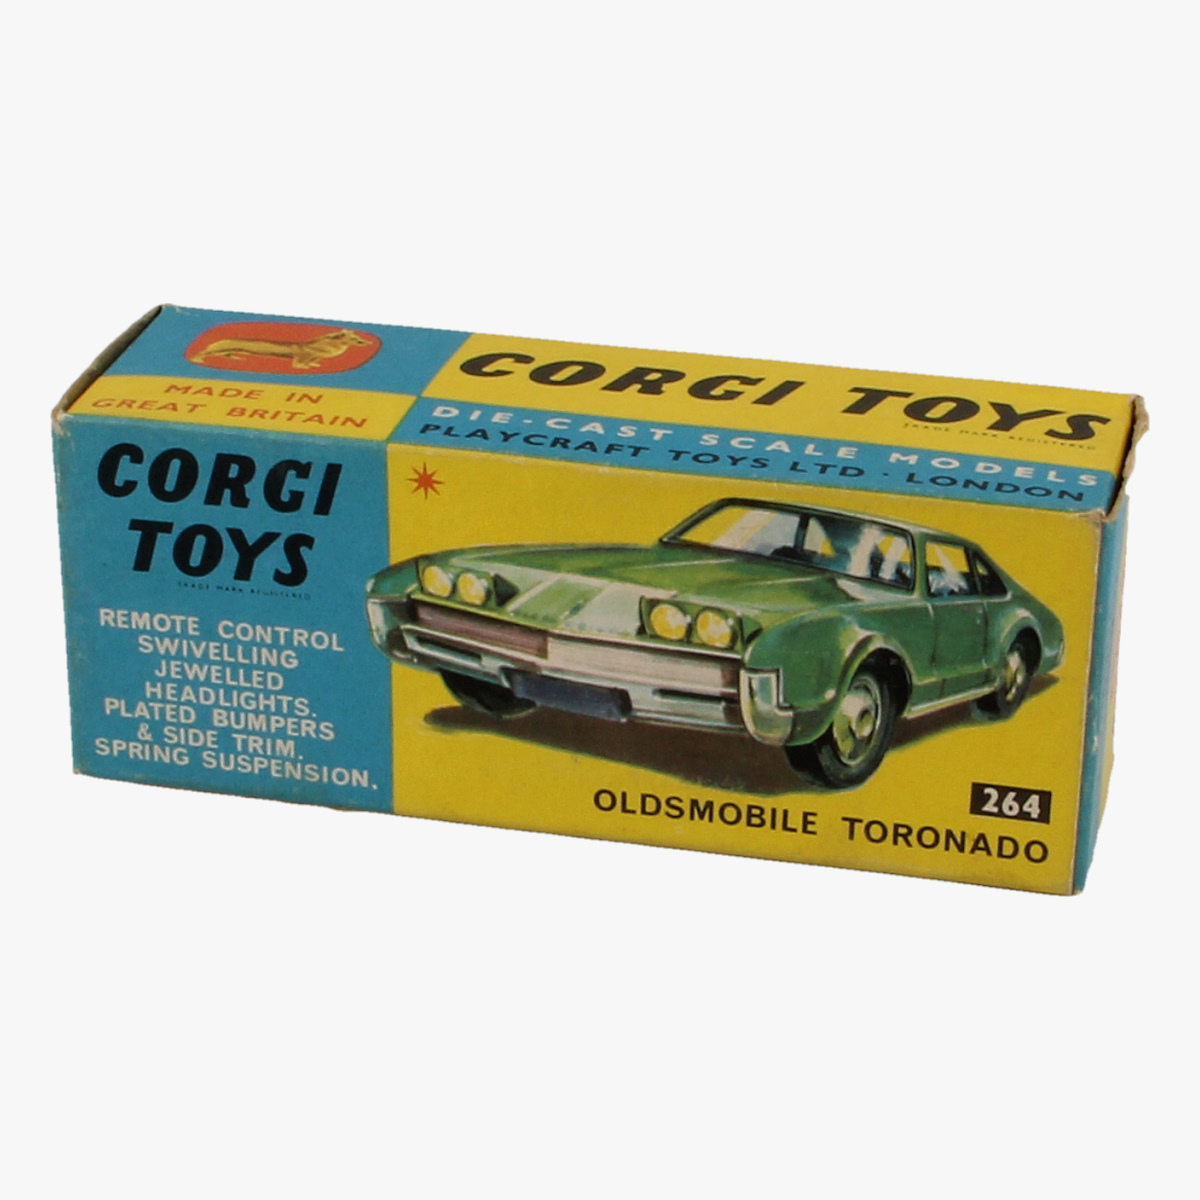 Afbeeldingen van Corgi Toys. Oldsmobile Tornonado, 264.